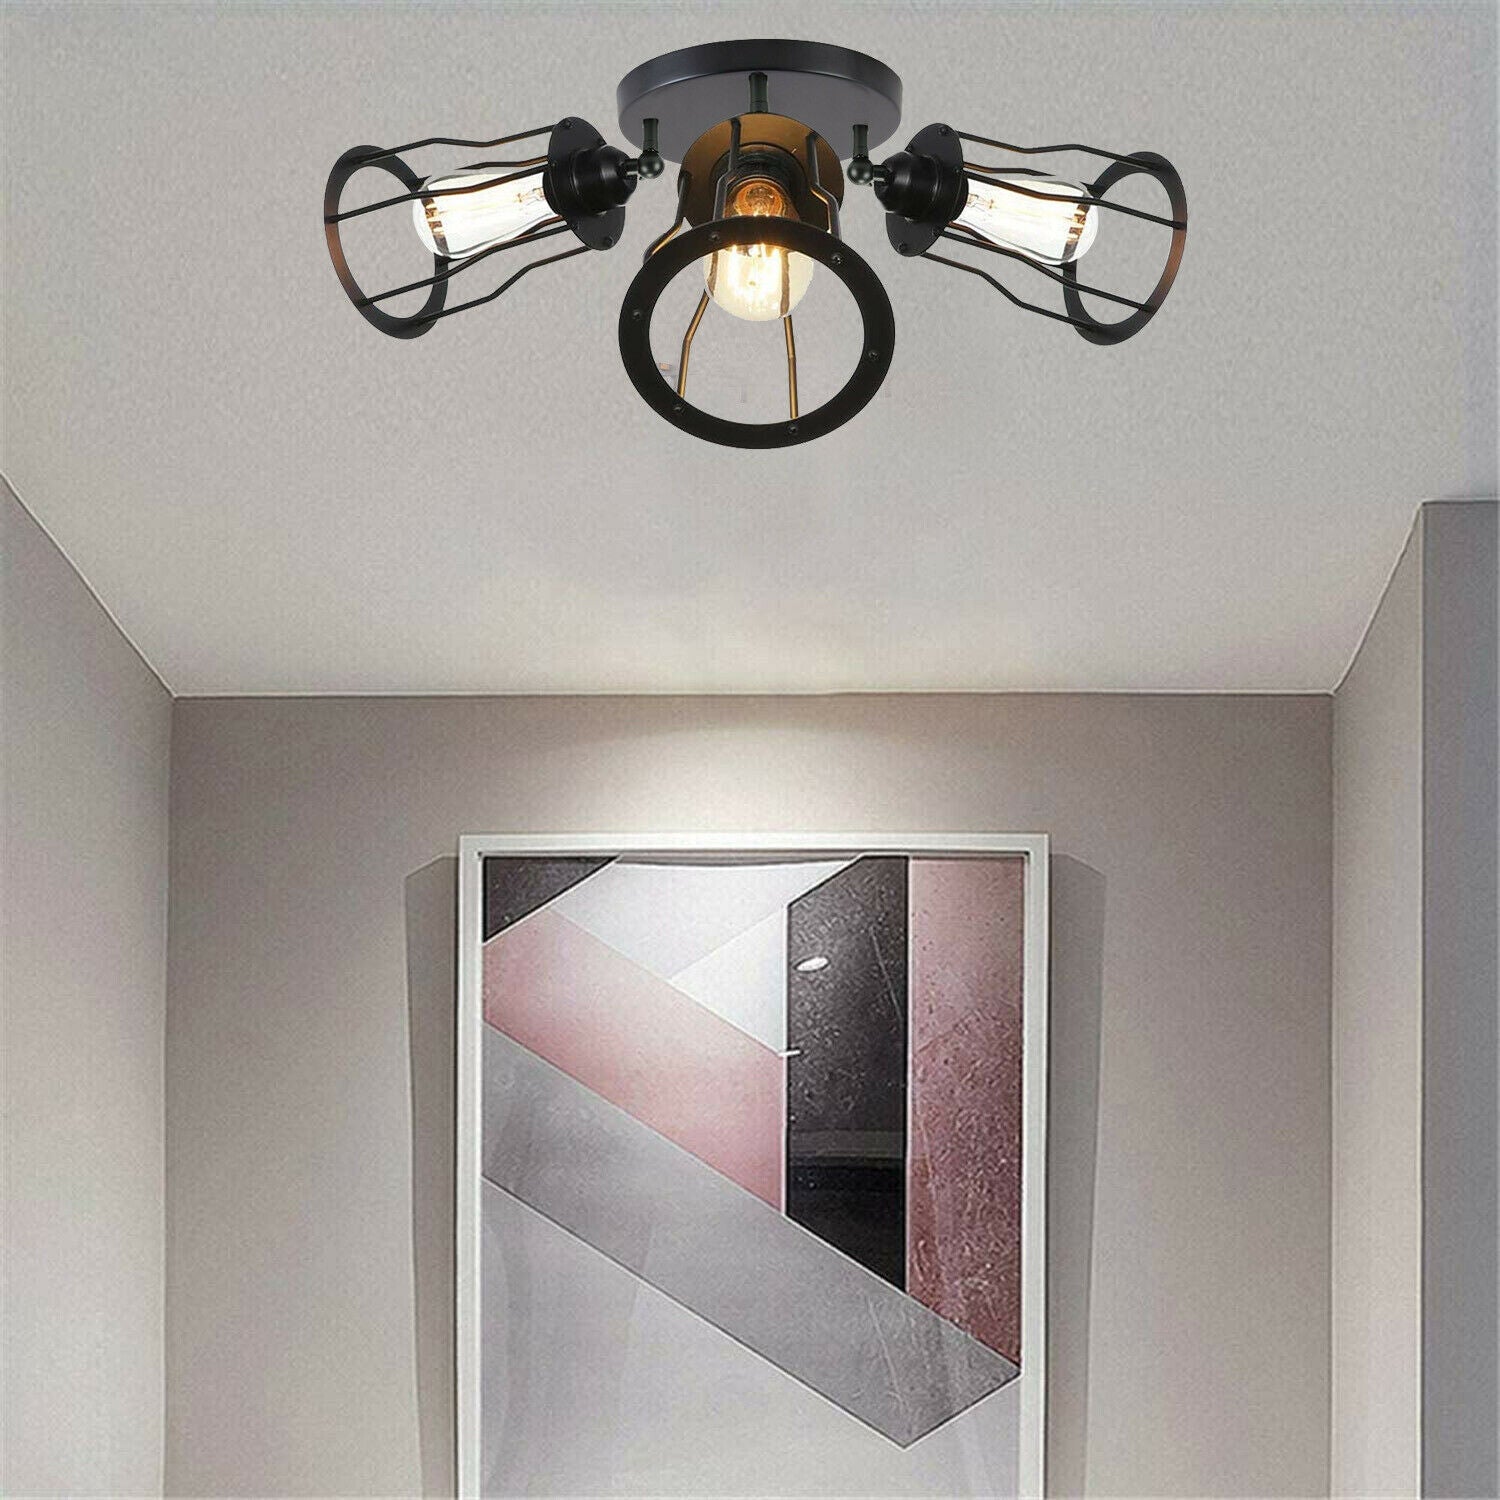 Ceiling Light 3 Shade Modern Industrial Vintage Cage Style Fitting Metal Flush Mount~2014 - LEDSone UK Ltd